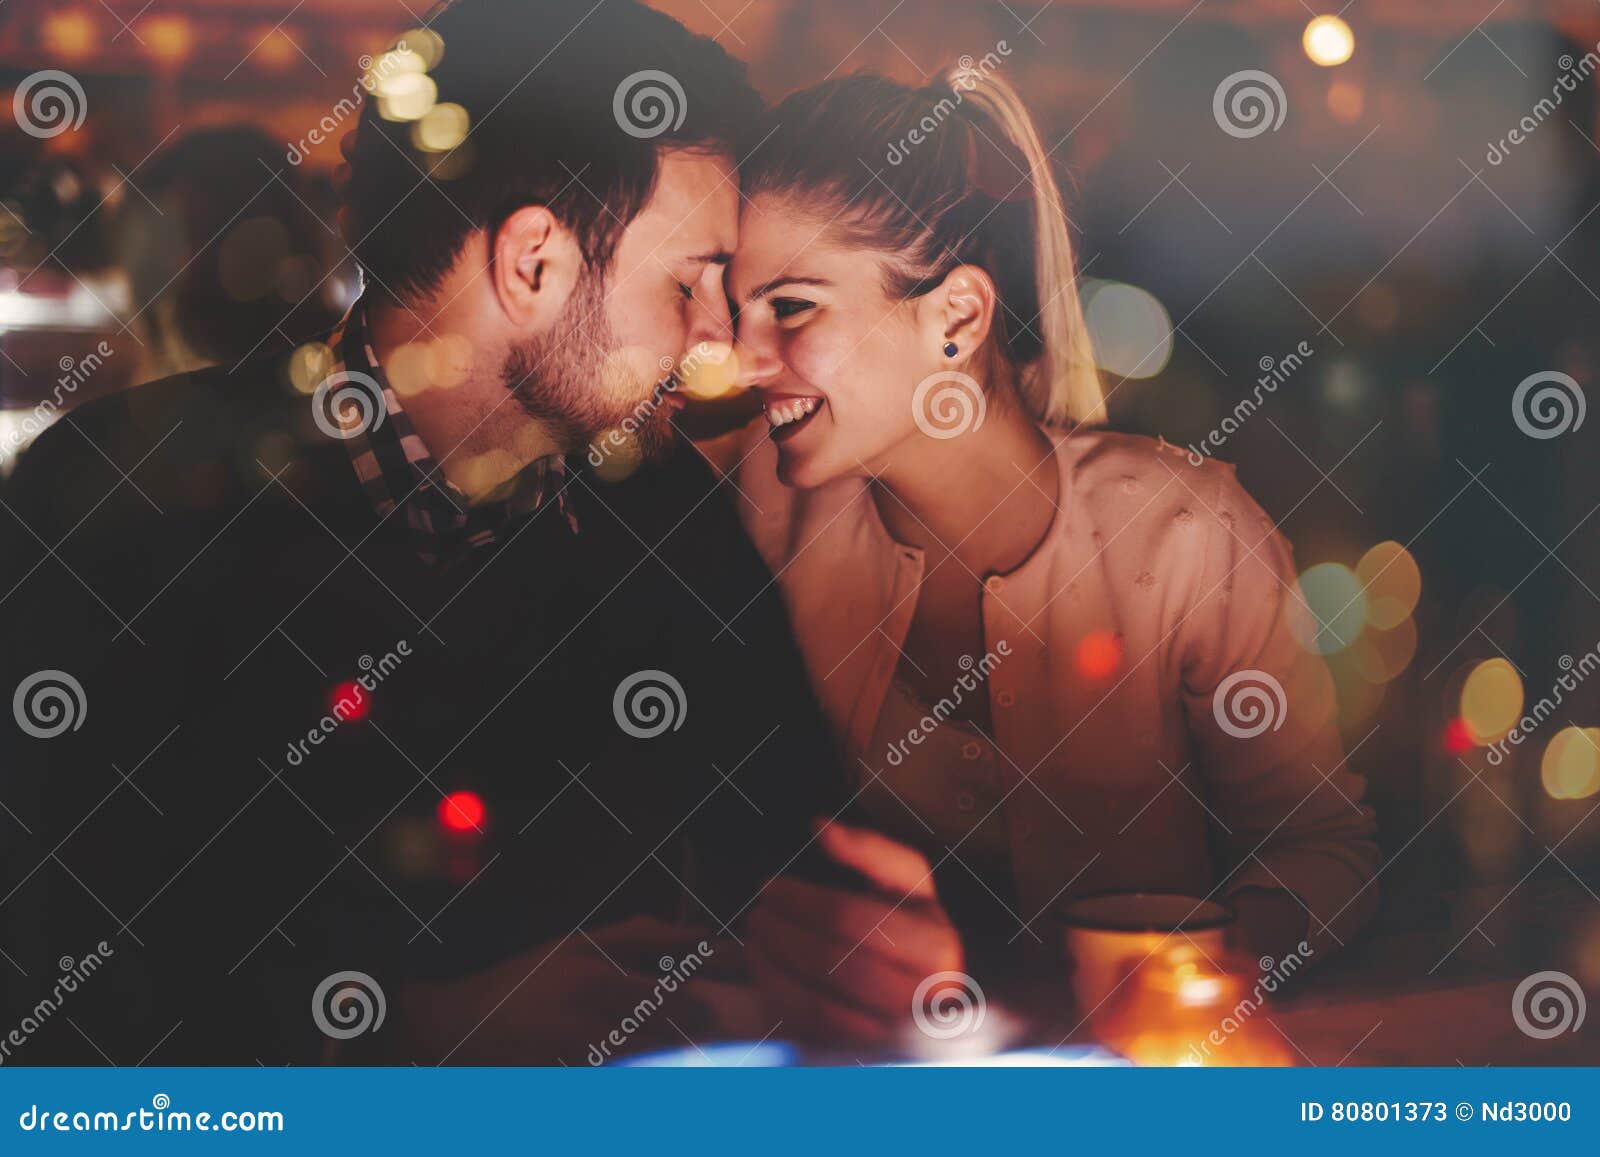 romantic couple dating in pub